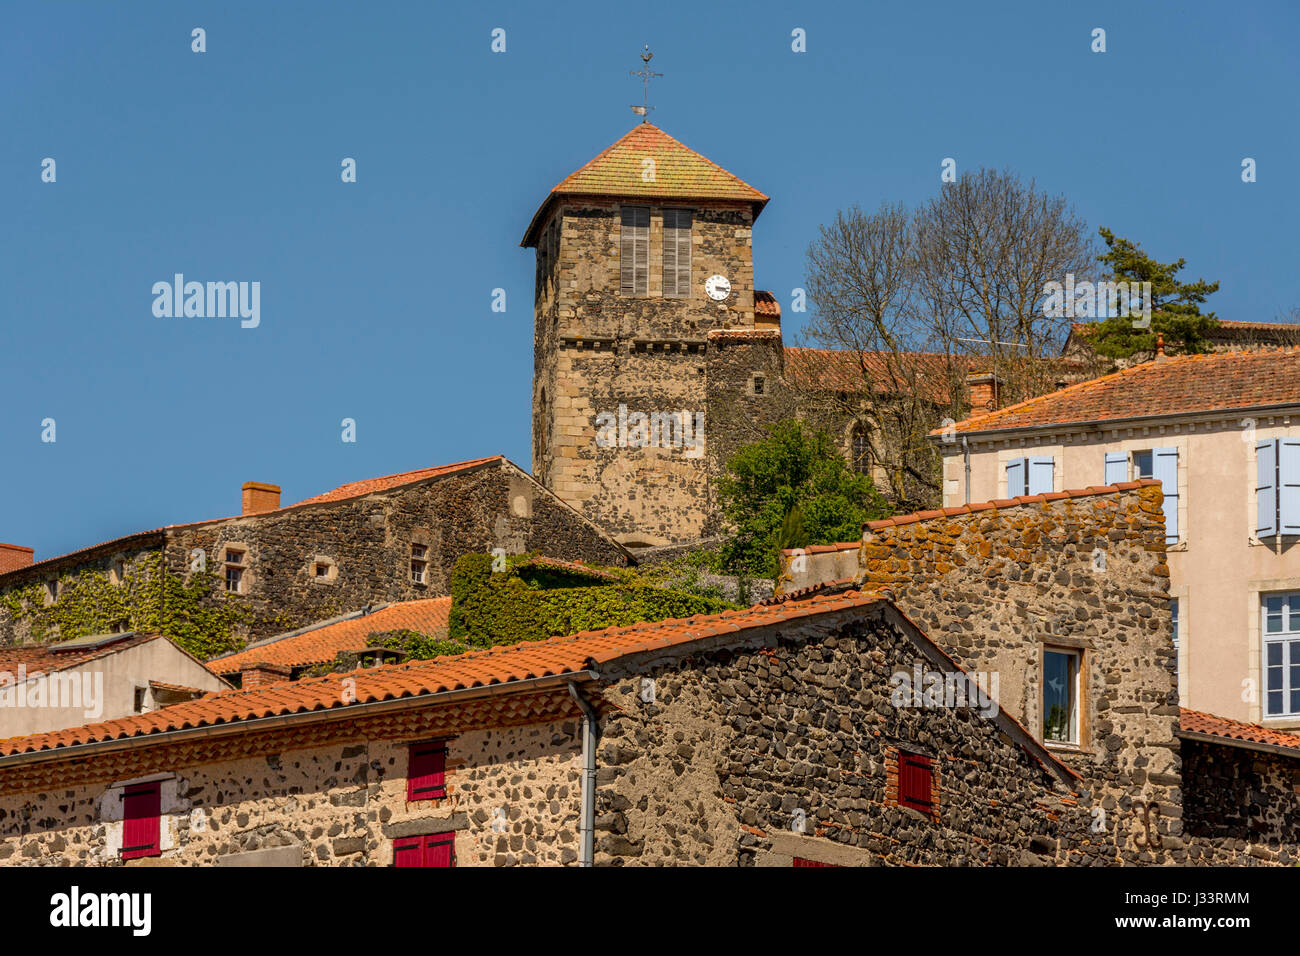 Le village d'Usson a été étiqueté les plus Beaux villages de France, les plus beaux villages de France. Puy-de-Dôme Auvergne-Rhône-Alpes, France Banque D'Images